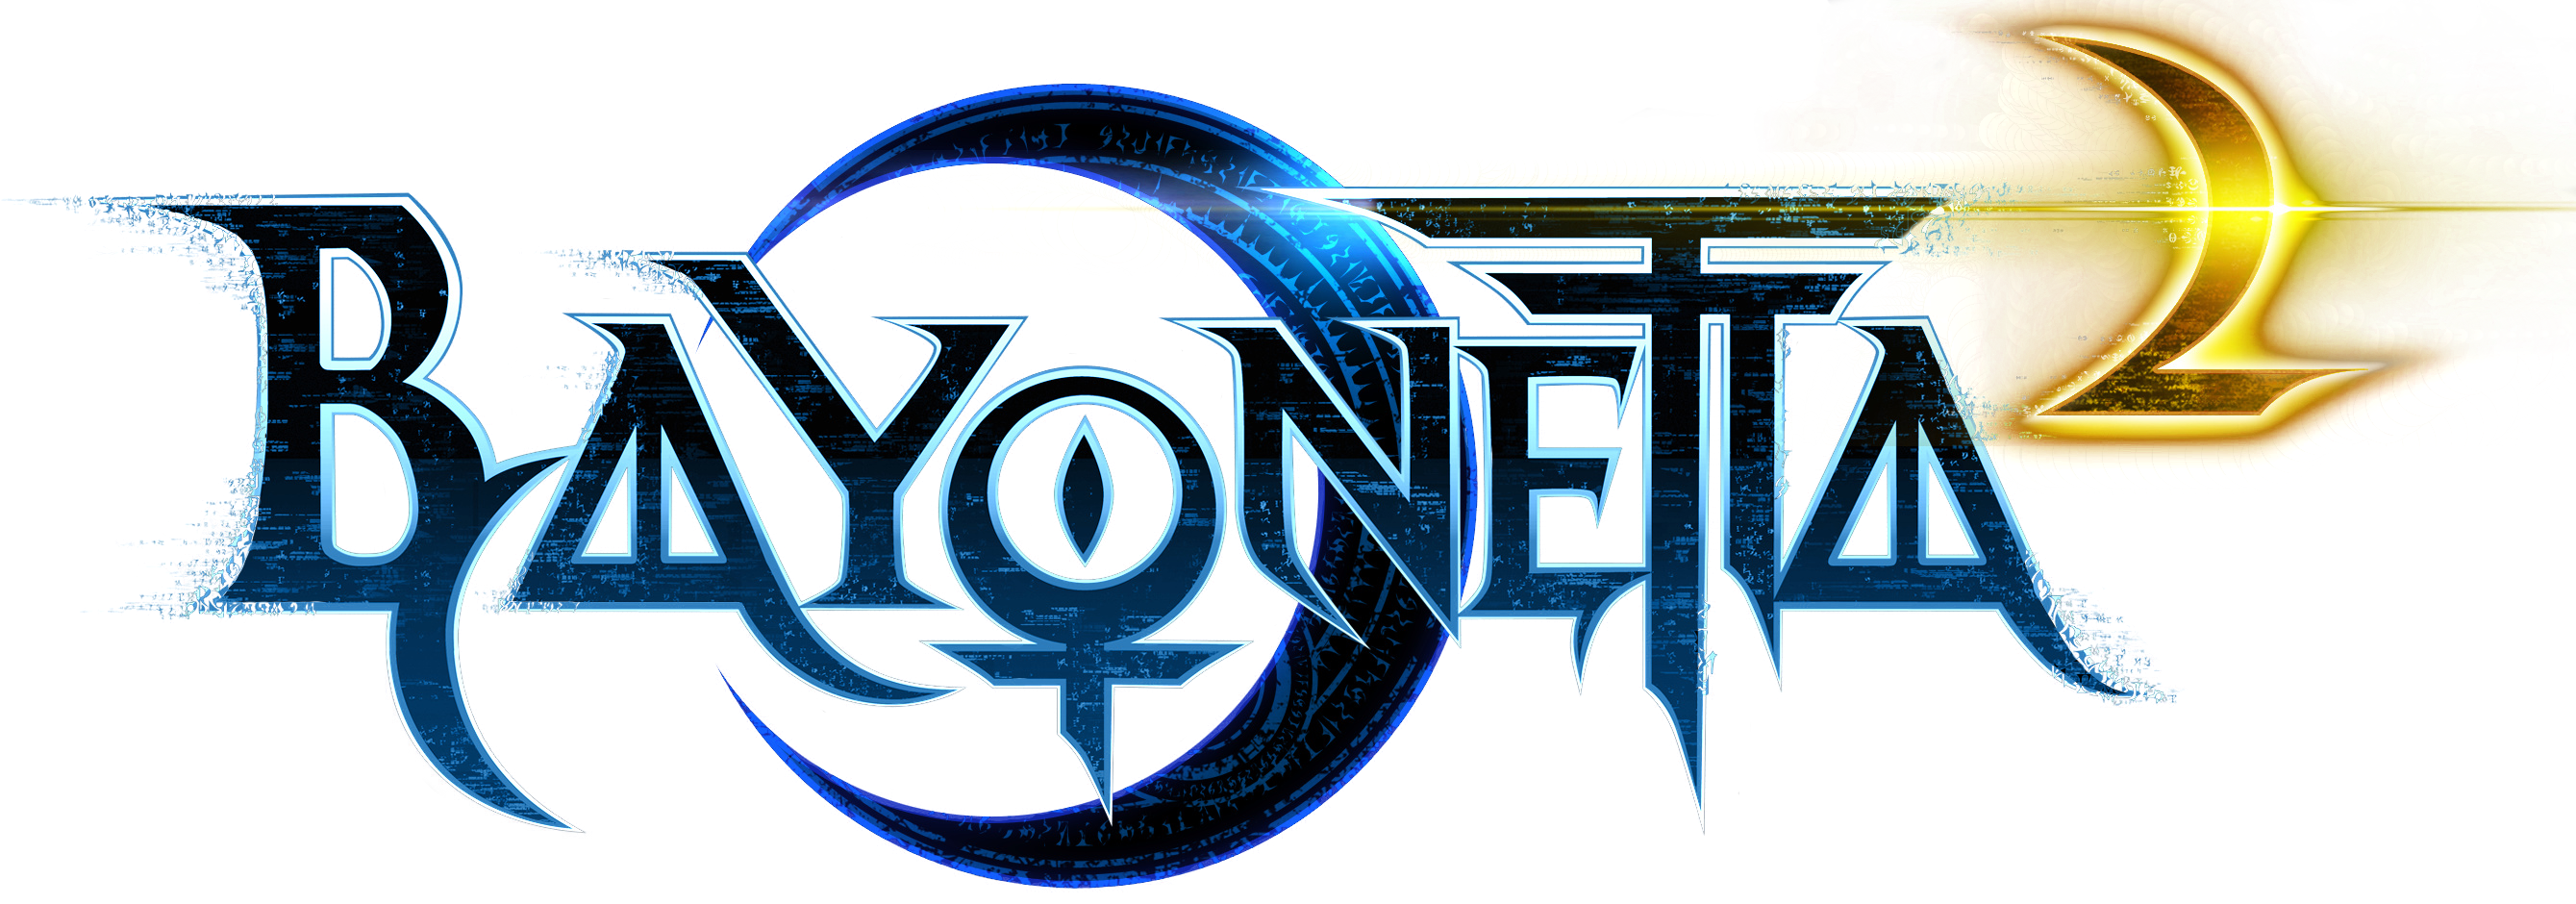 bayonetta 3 logo